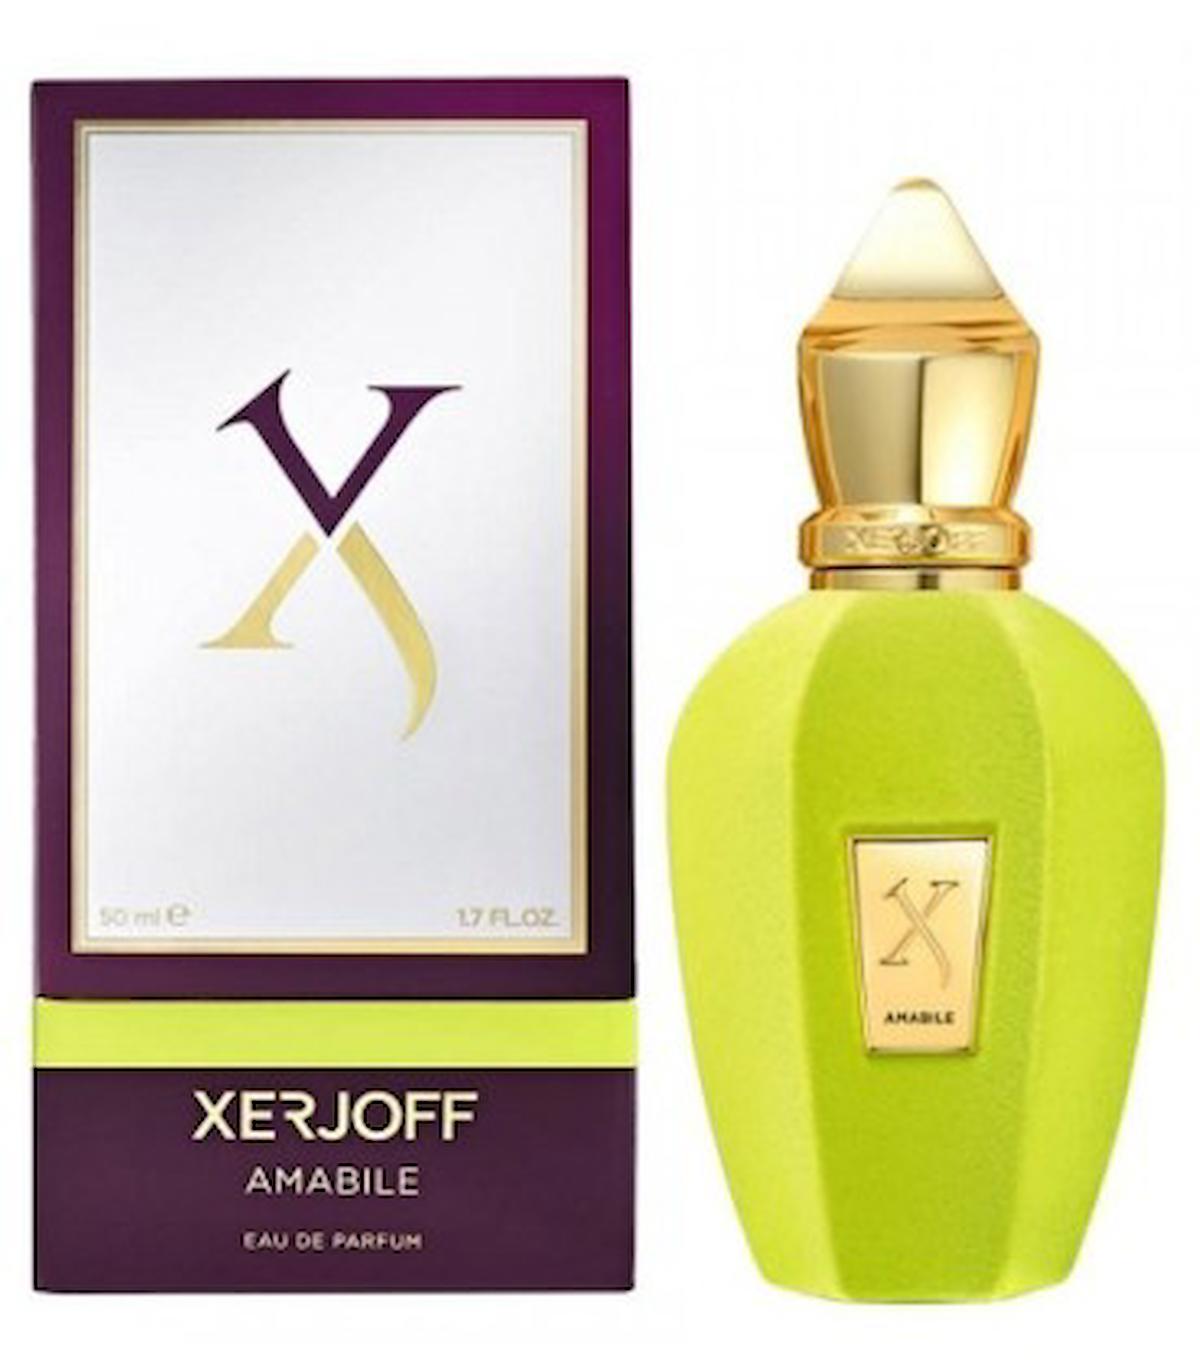 Xerjoff V Amabile EDP Meyvemsi Kadın Parfüm 100 ml